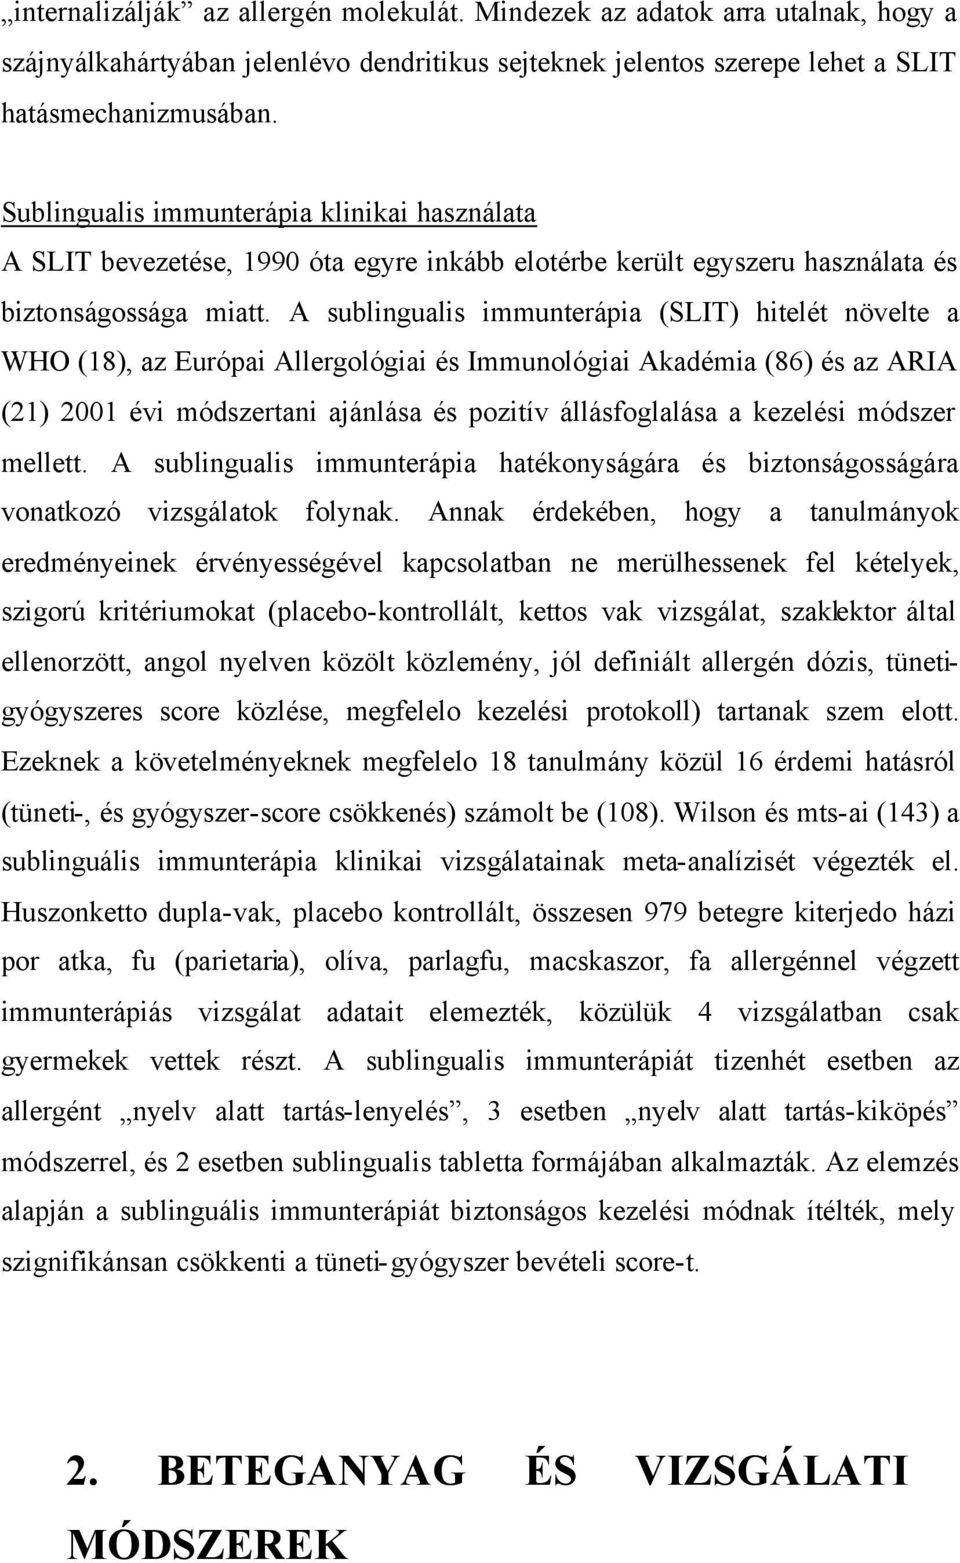 A sublingualis immunterápia (SLIT) hitelét növelte a WHO (18), az Európai Allergológiai és Immunológiai Akadémia (86) és az ARIA (21) 2001 évi módszertani ajánlása és pozitív állásfoglalása a